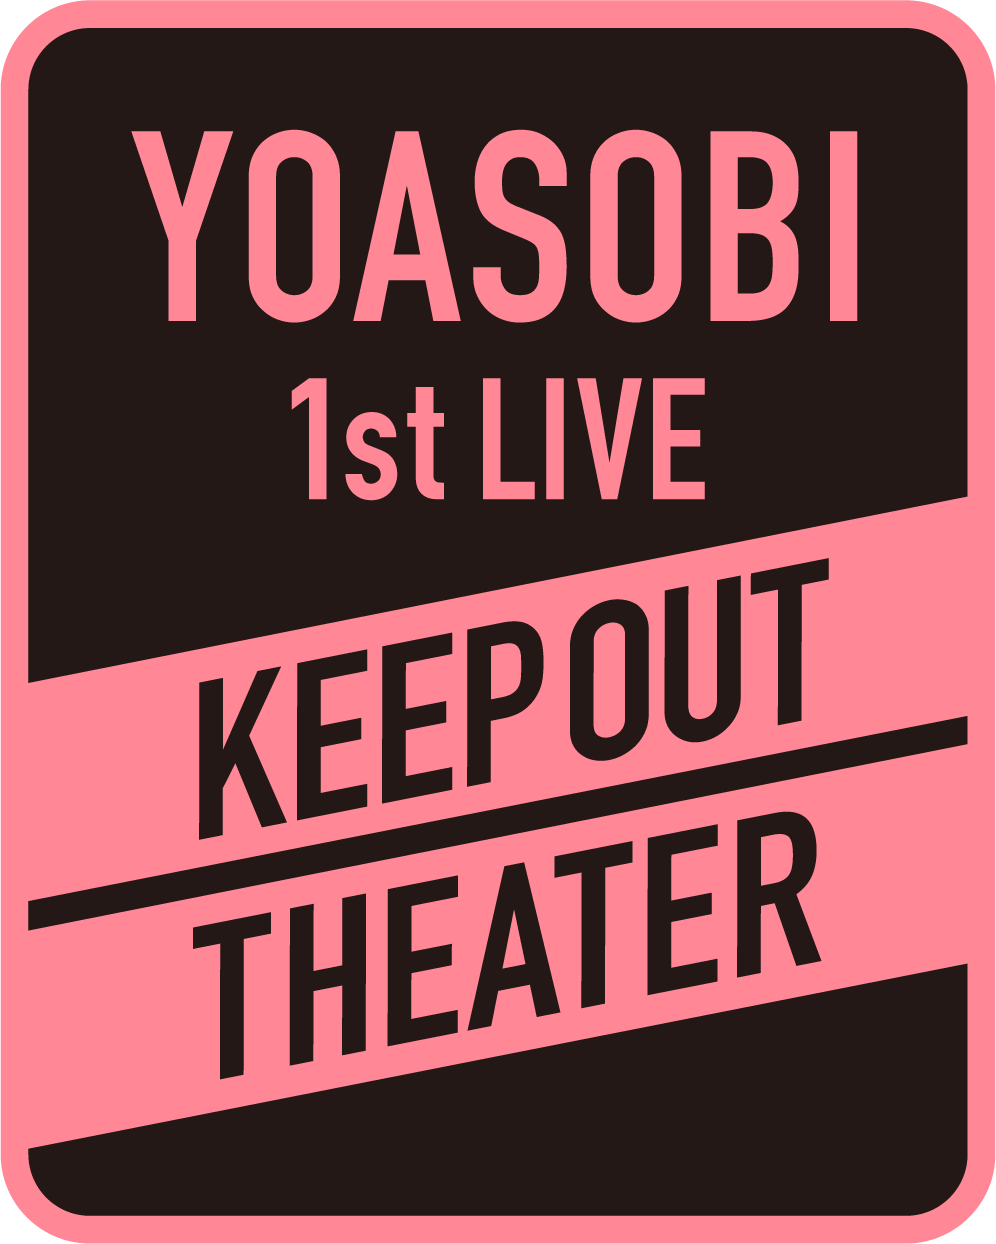 Yoasobi オフィシャルサイト